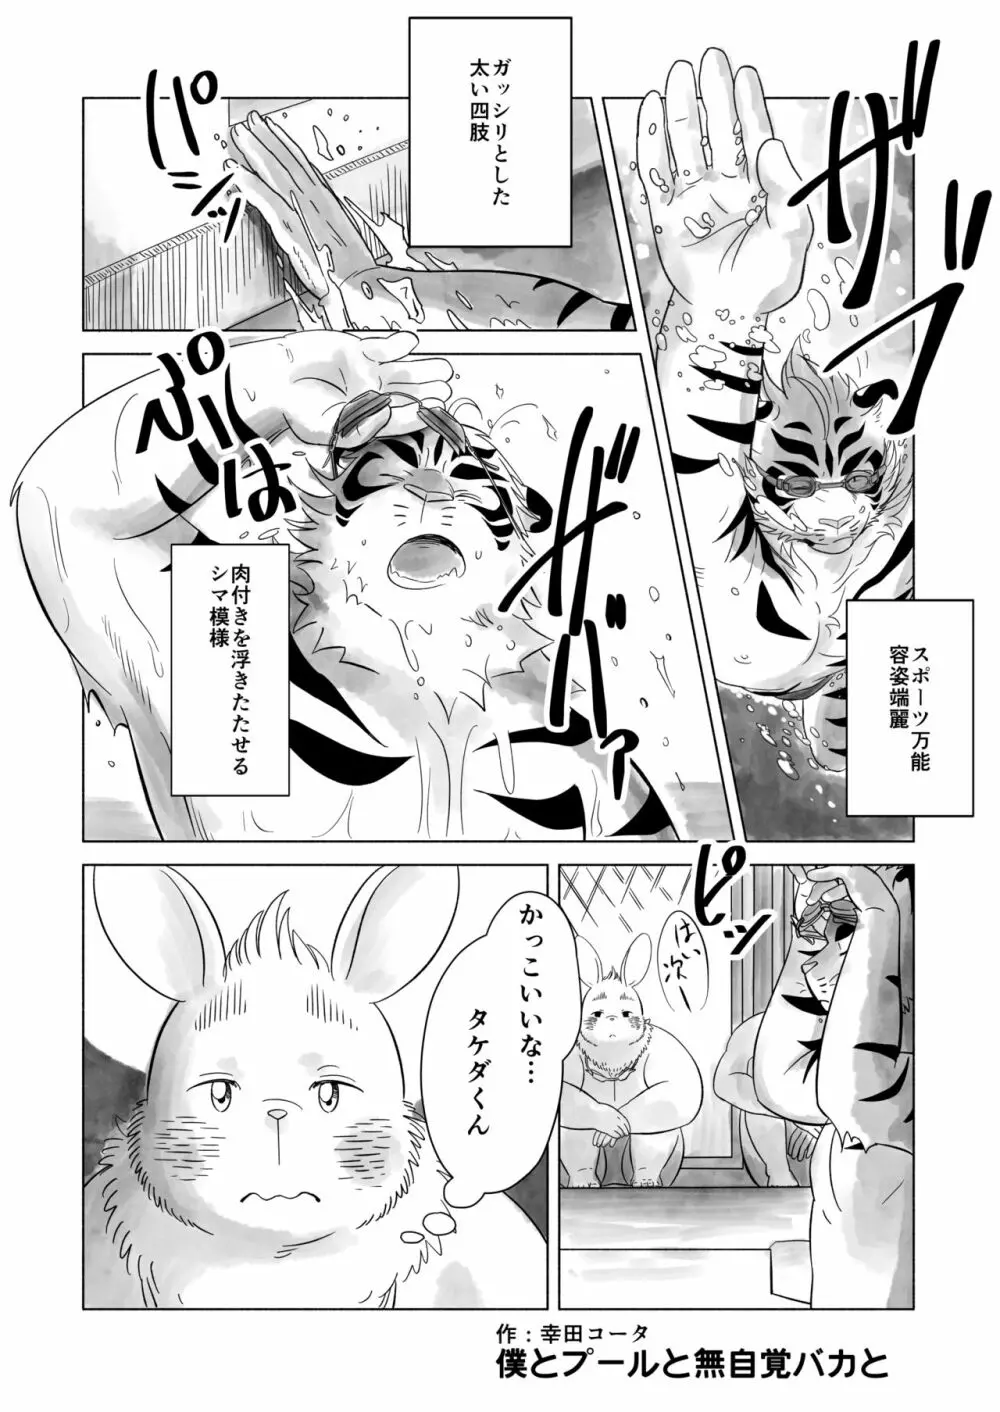 Koda_kota - Bunny and Tiger + extras Page.2